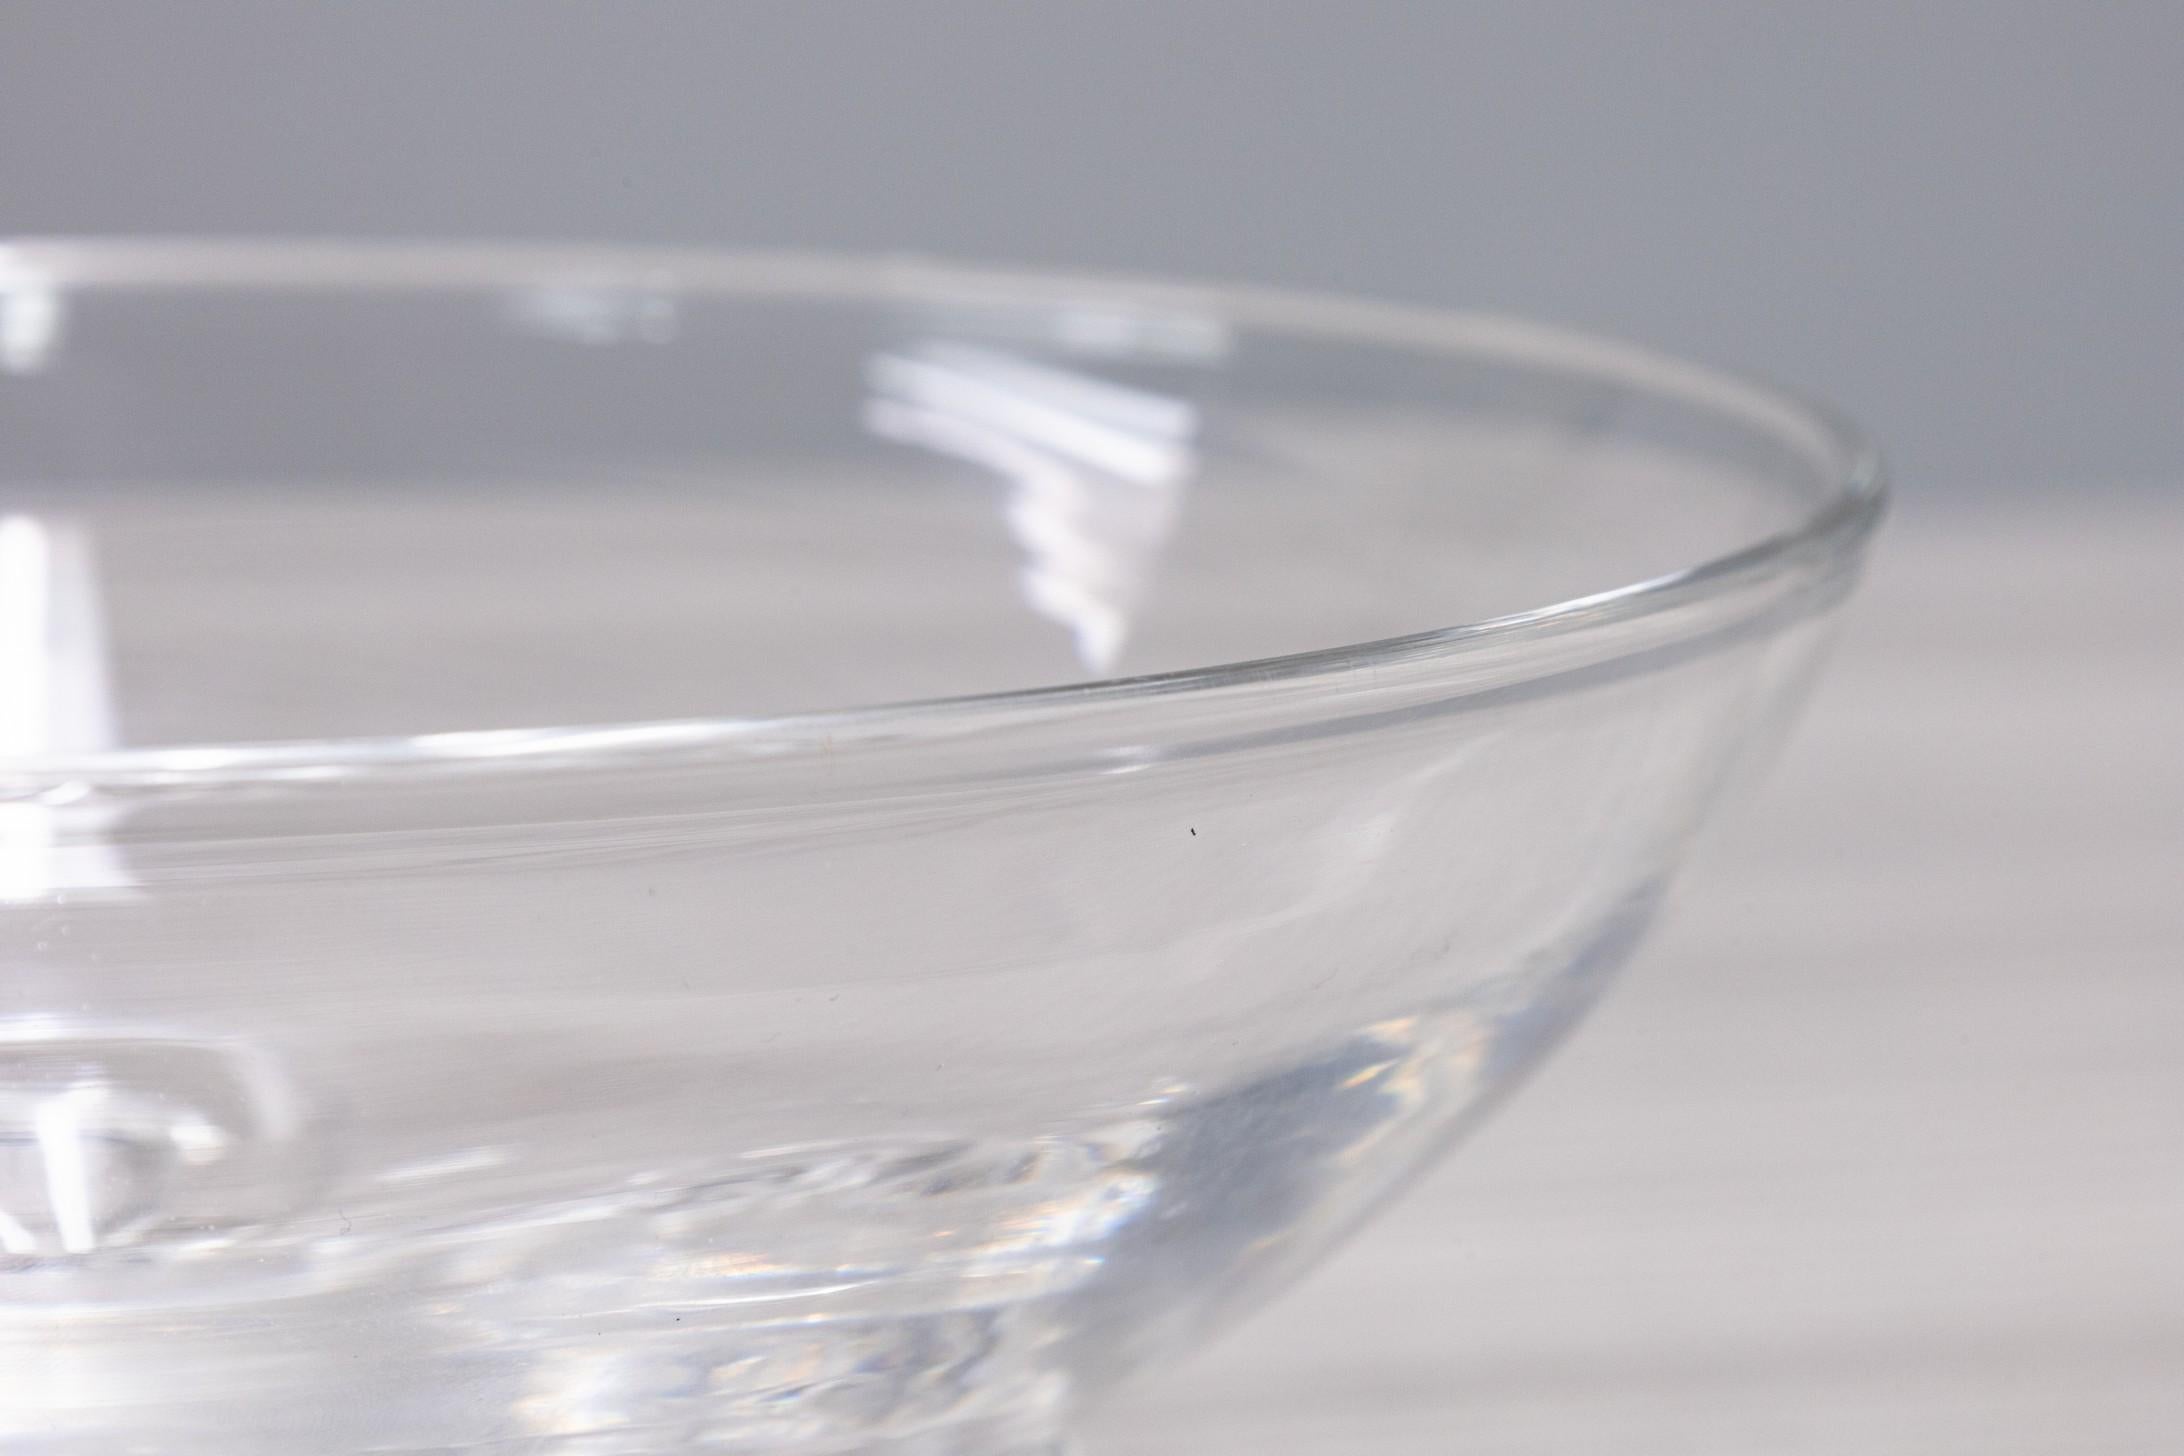 Un étonnant bol classique en verre de Steuben de l'artiste Donald Pollard. Cette petite coupe en cristal présente un élégant bord fin, qui descend jusqu'à trois pieds en boucle entourant la base. Cette pièce est signée sur la face inférieure. Il